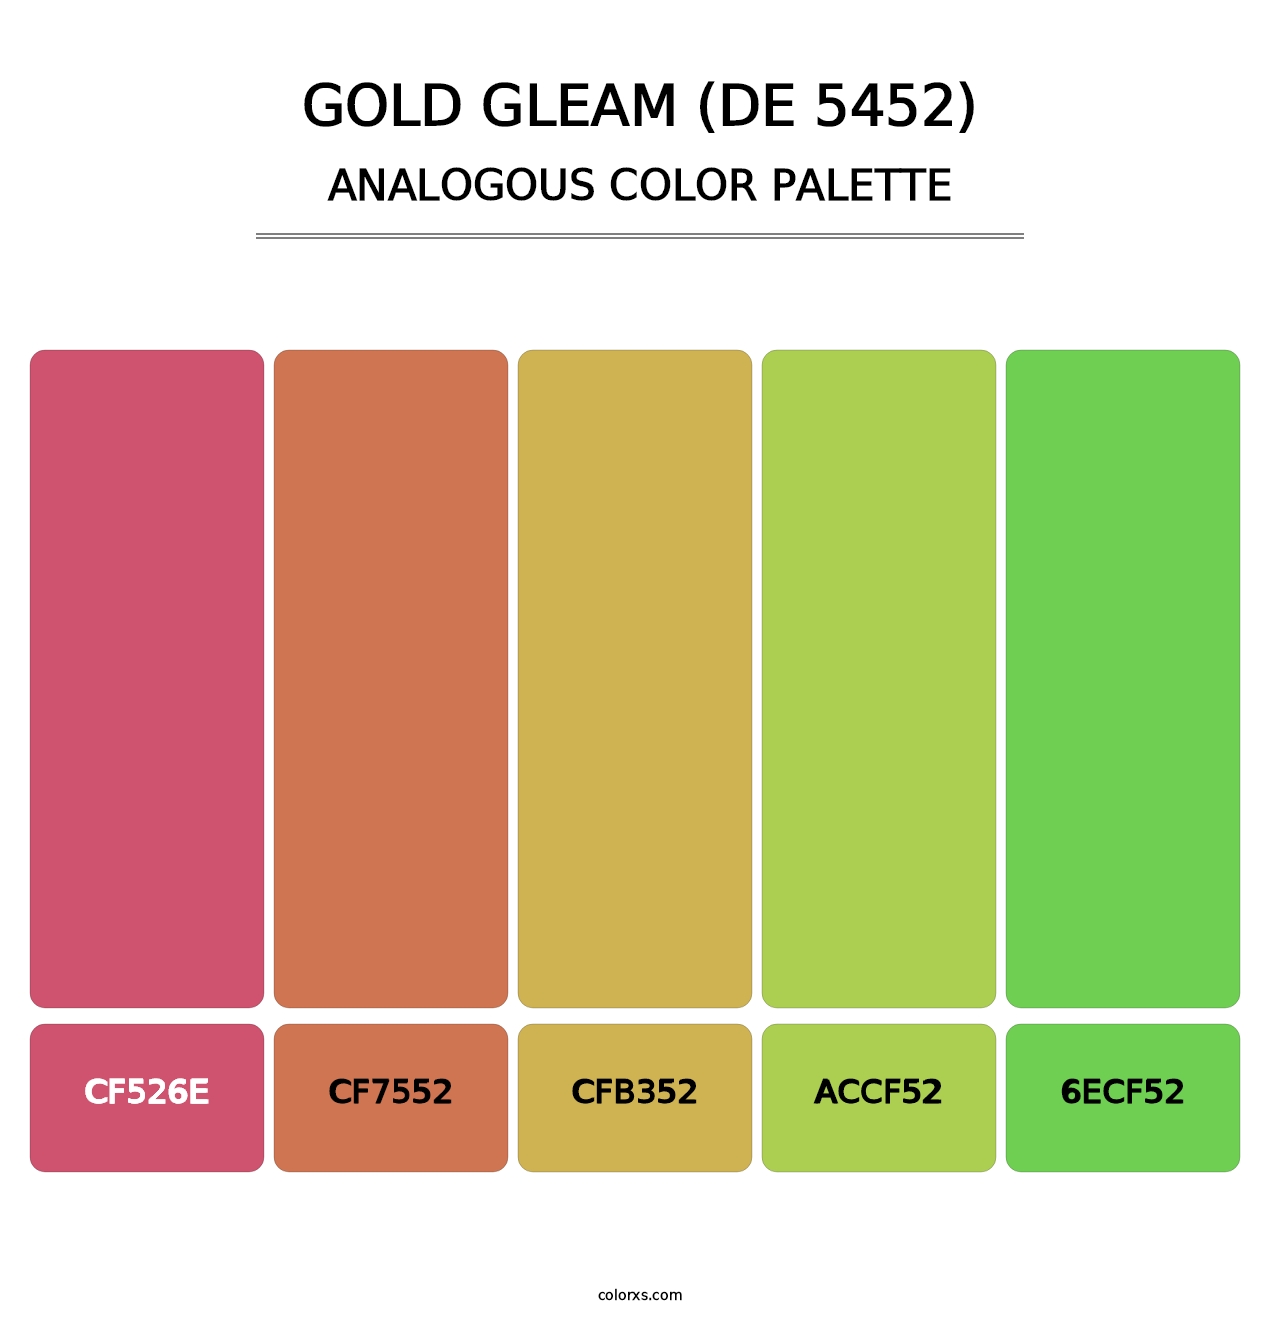 Gold Gleam (DE 5452) - Analogous Color Palette